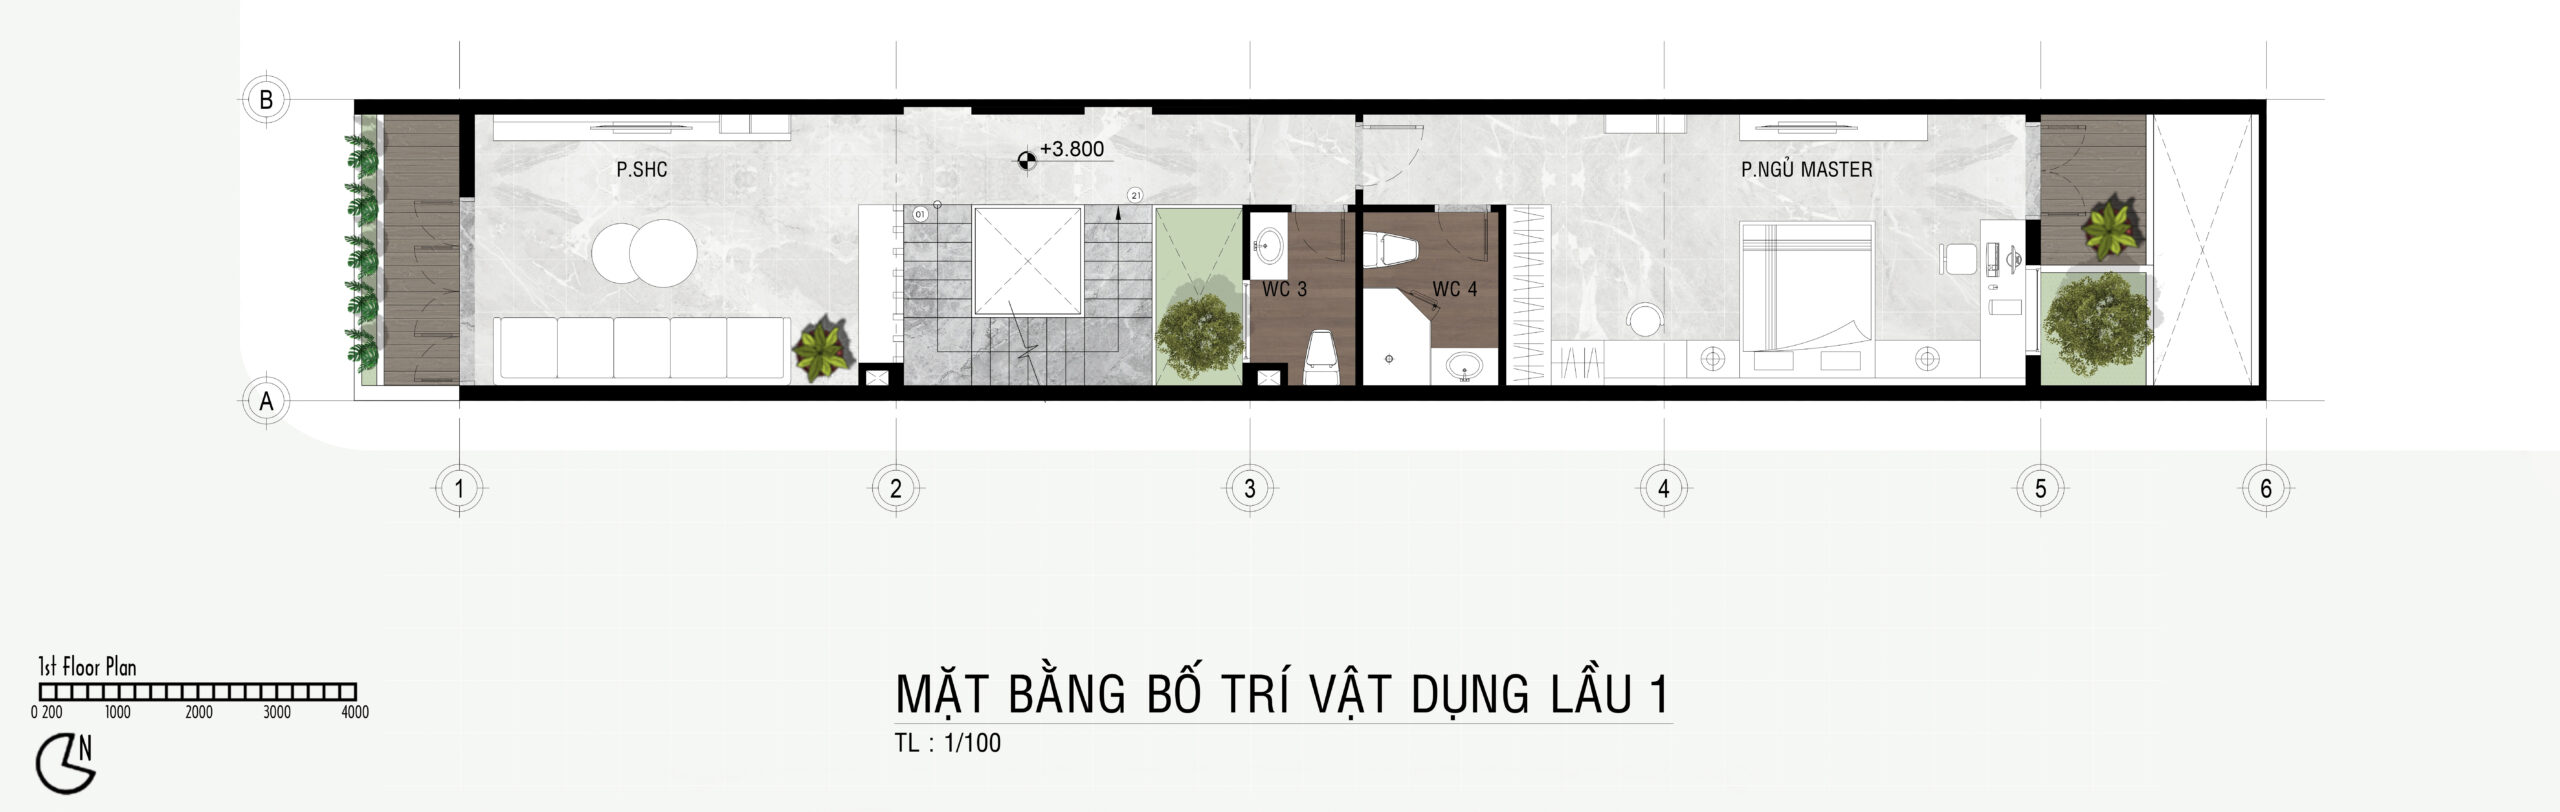 Mat Bang Mau Nha Ong 4 Tang Hien Dai 1 Tret 3 Lau 2